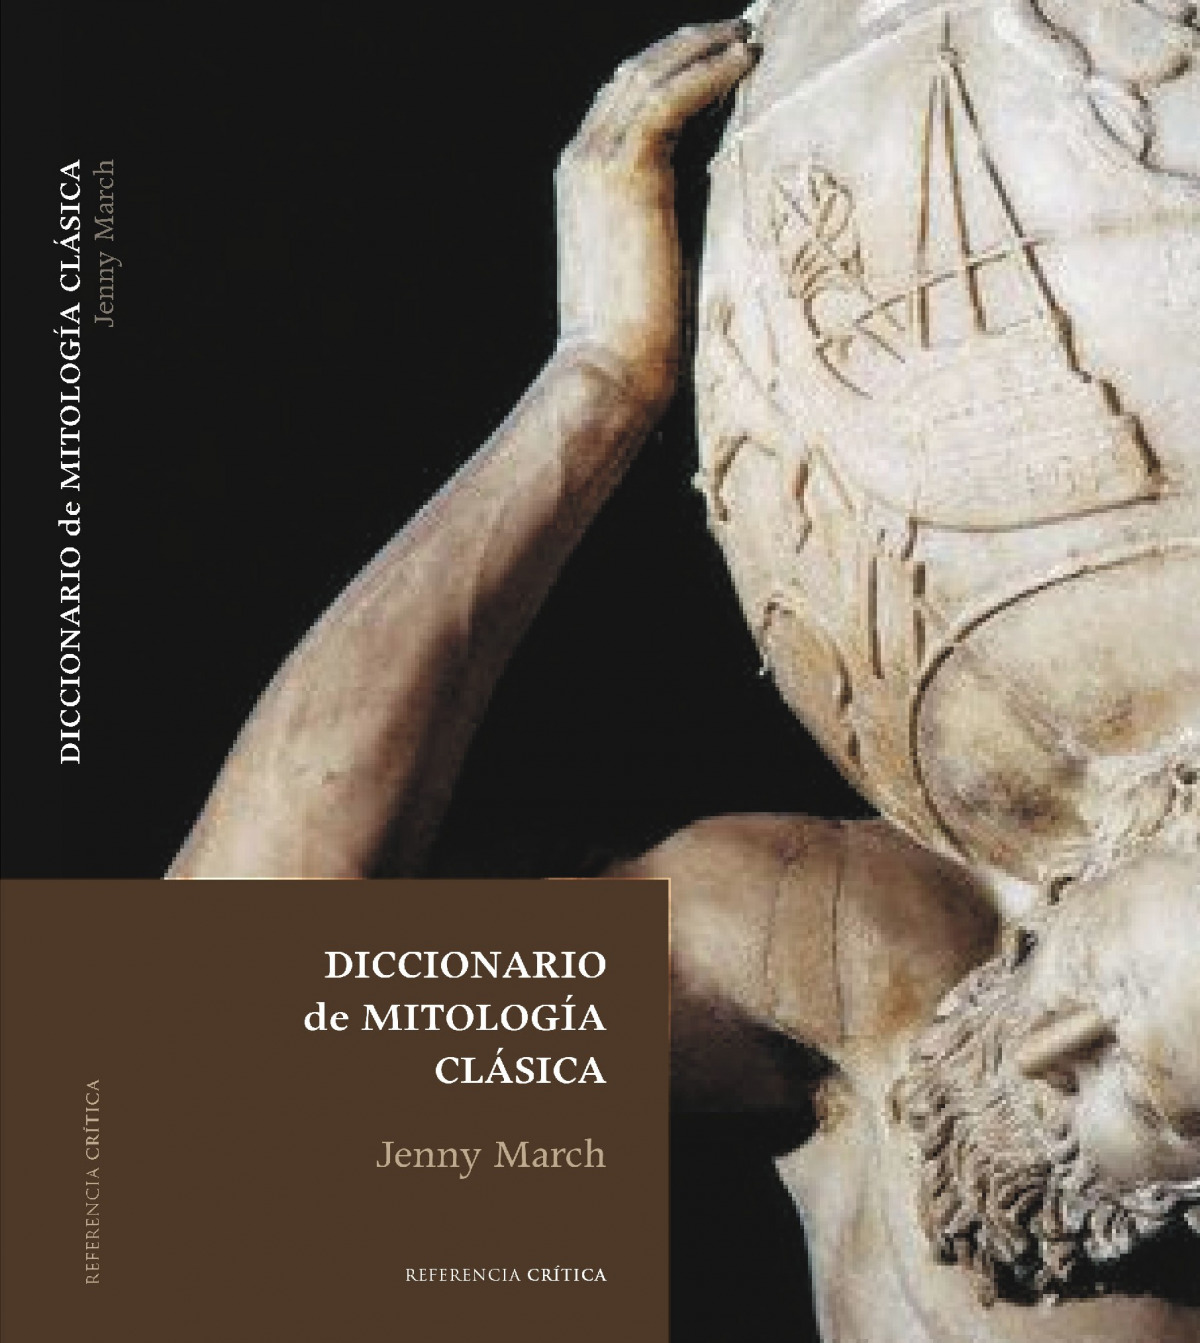 Diccionario de mitologia clasica - March, Jenny